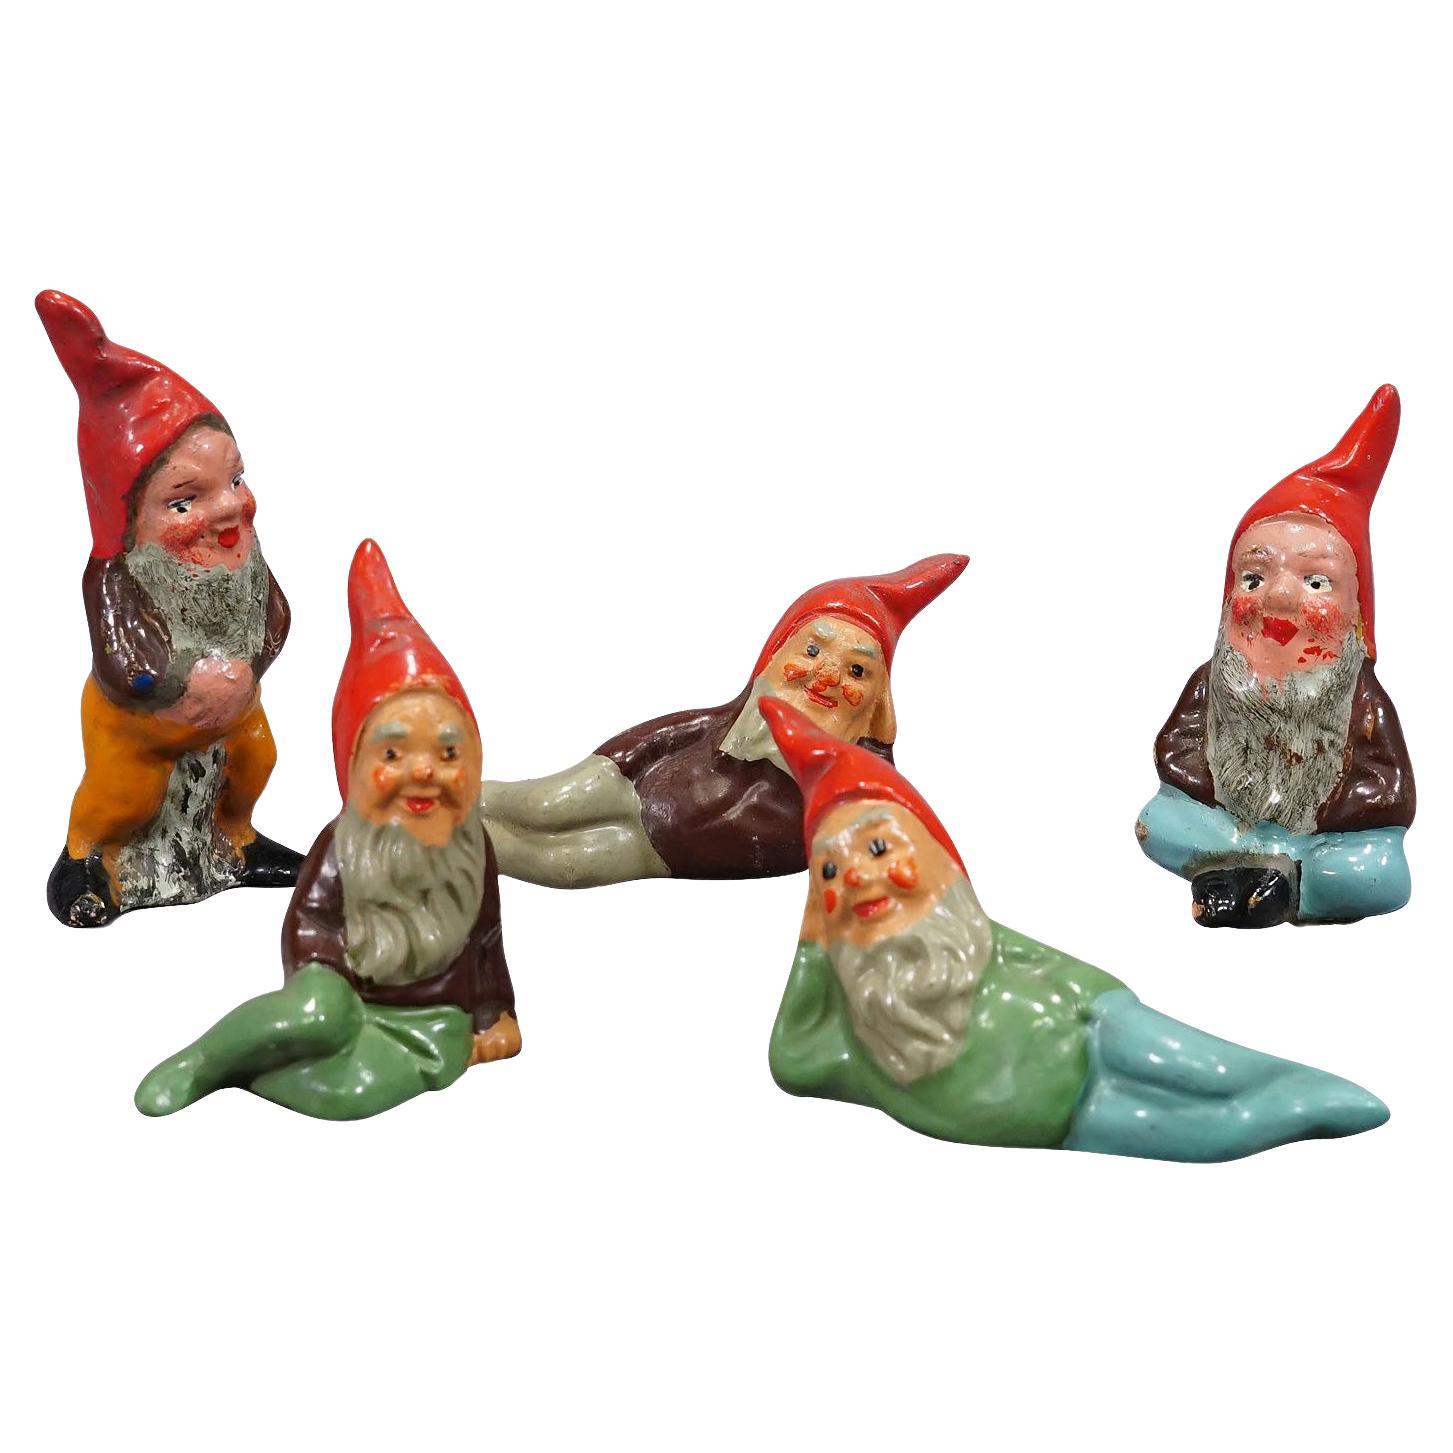 Five Tiny Terracotta Garden Gnomes, Germany ca. 1950s